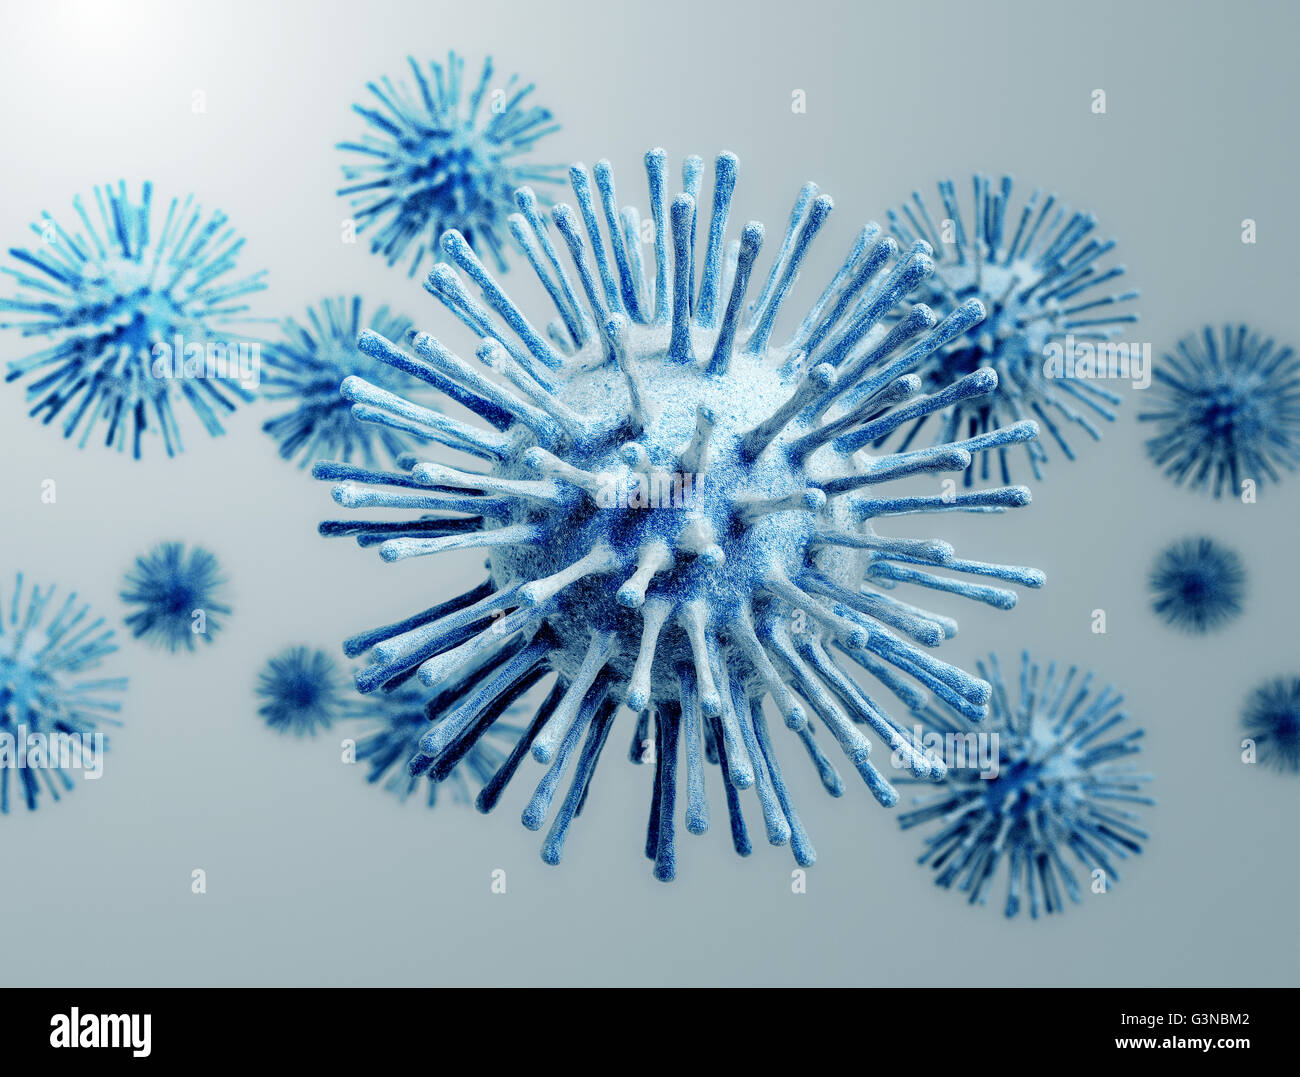 Ilustración de las células del virus de la gripe. Foto de stock